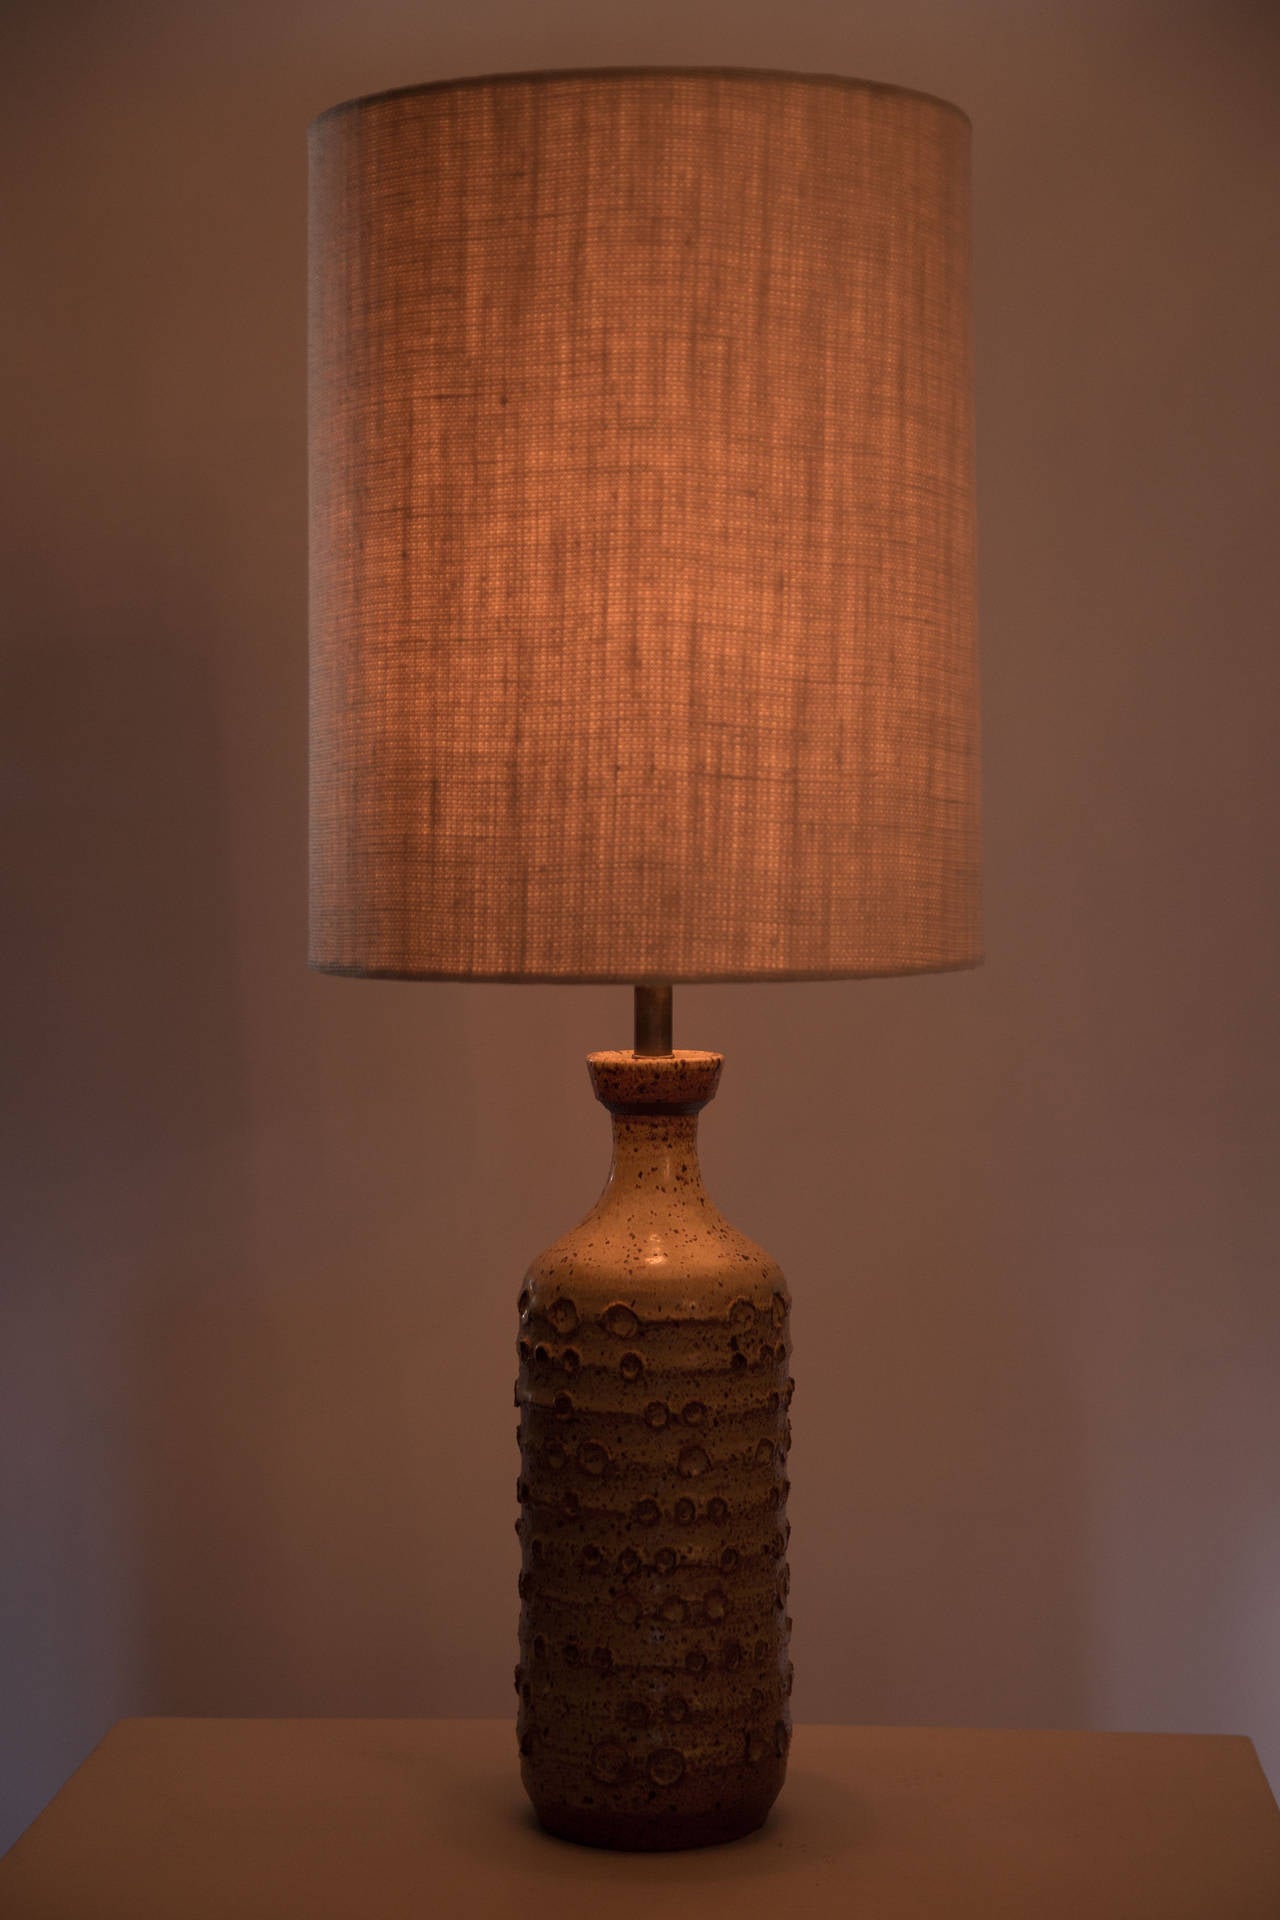 Textured ceramic table lamp.